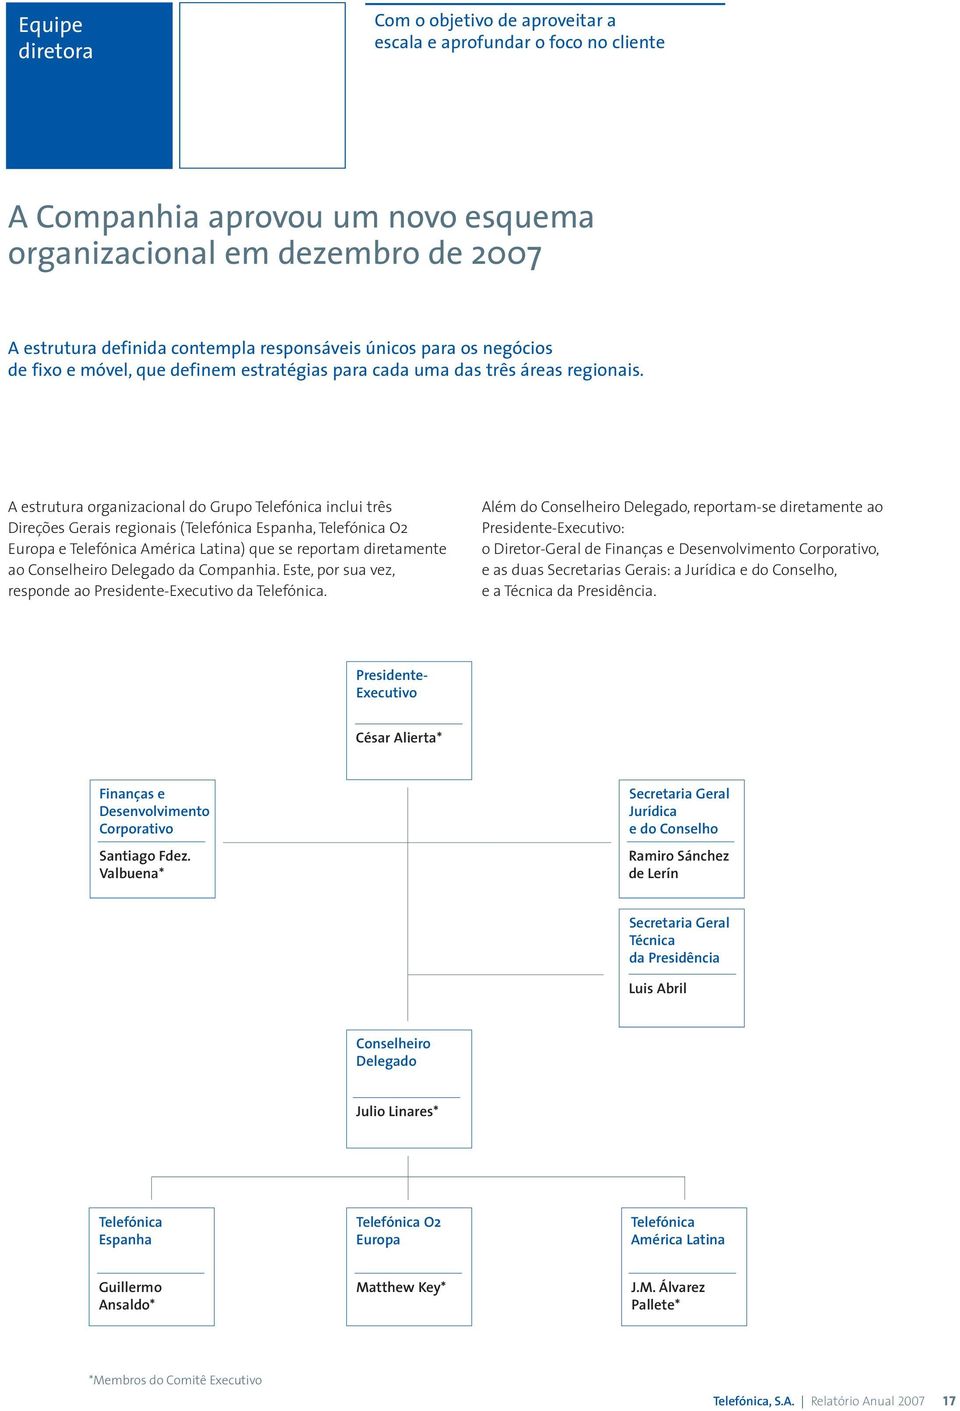 A estrutura organizacional do Grupo Telefónica inclui três Direções Gerais regionais (Telefónica Espanha, Telefónica O2 Europa e Telefónica América Latina) que se reportam diretamente ao Conselheiro